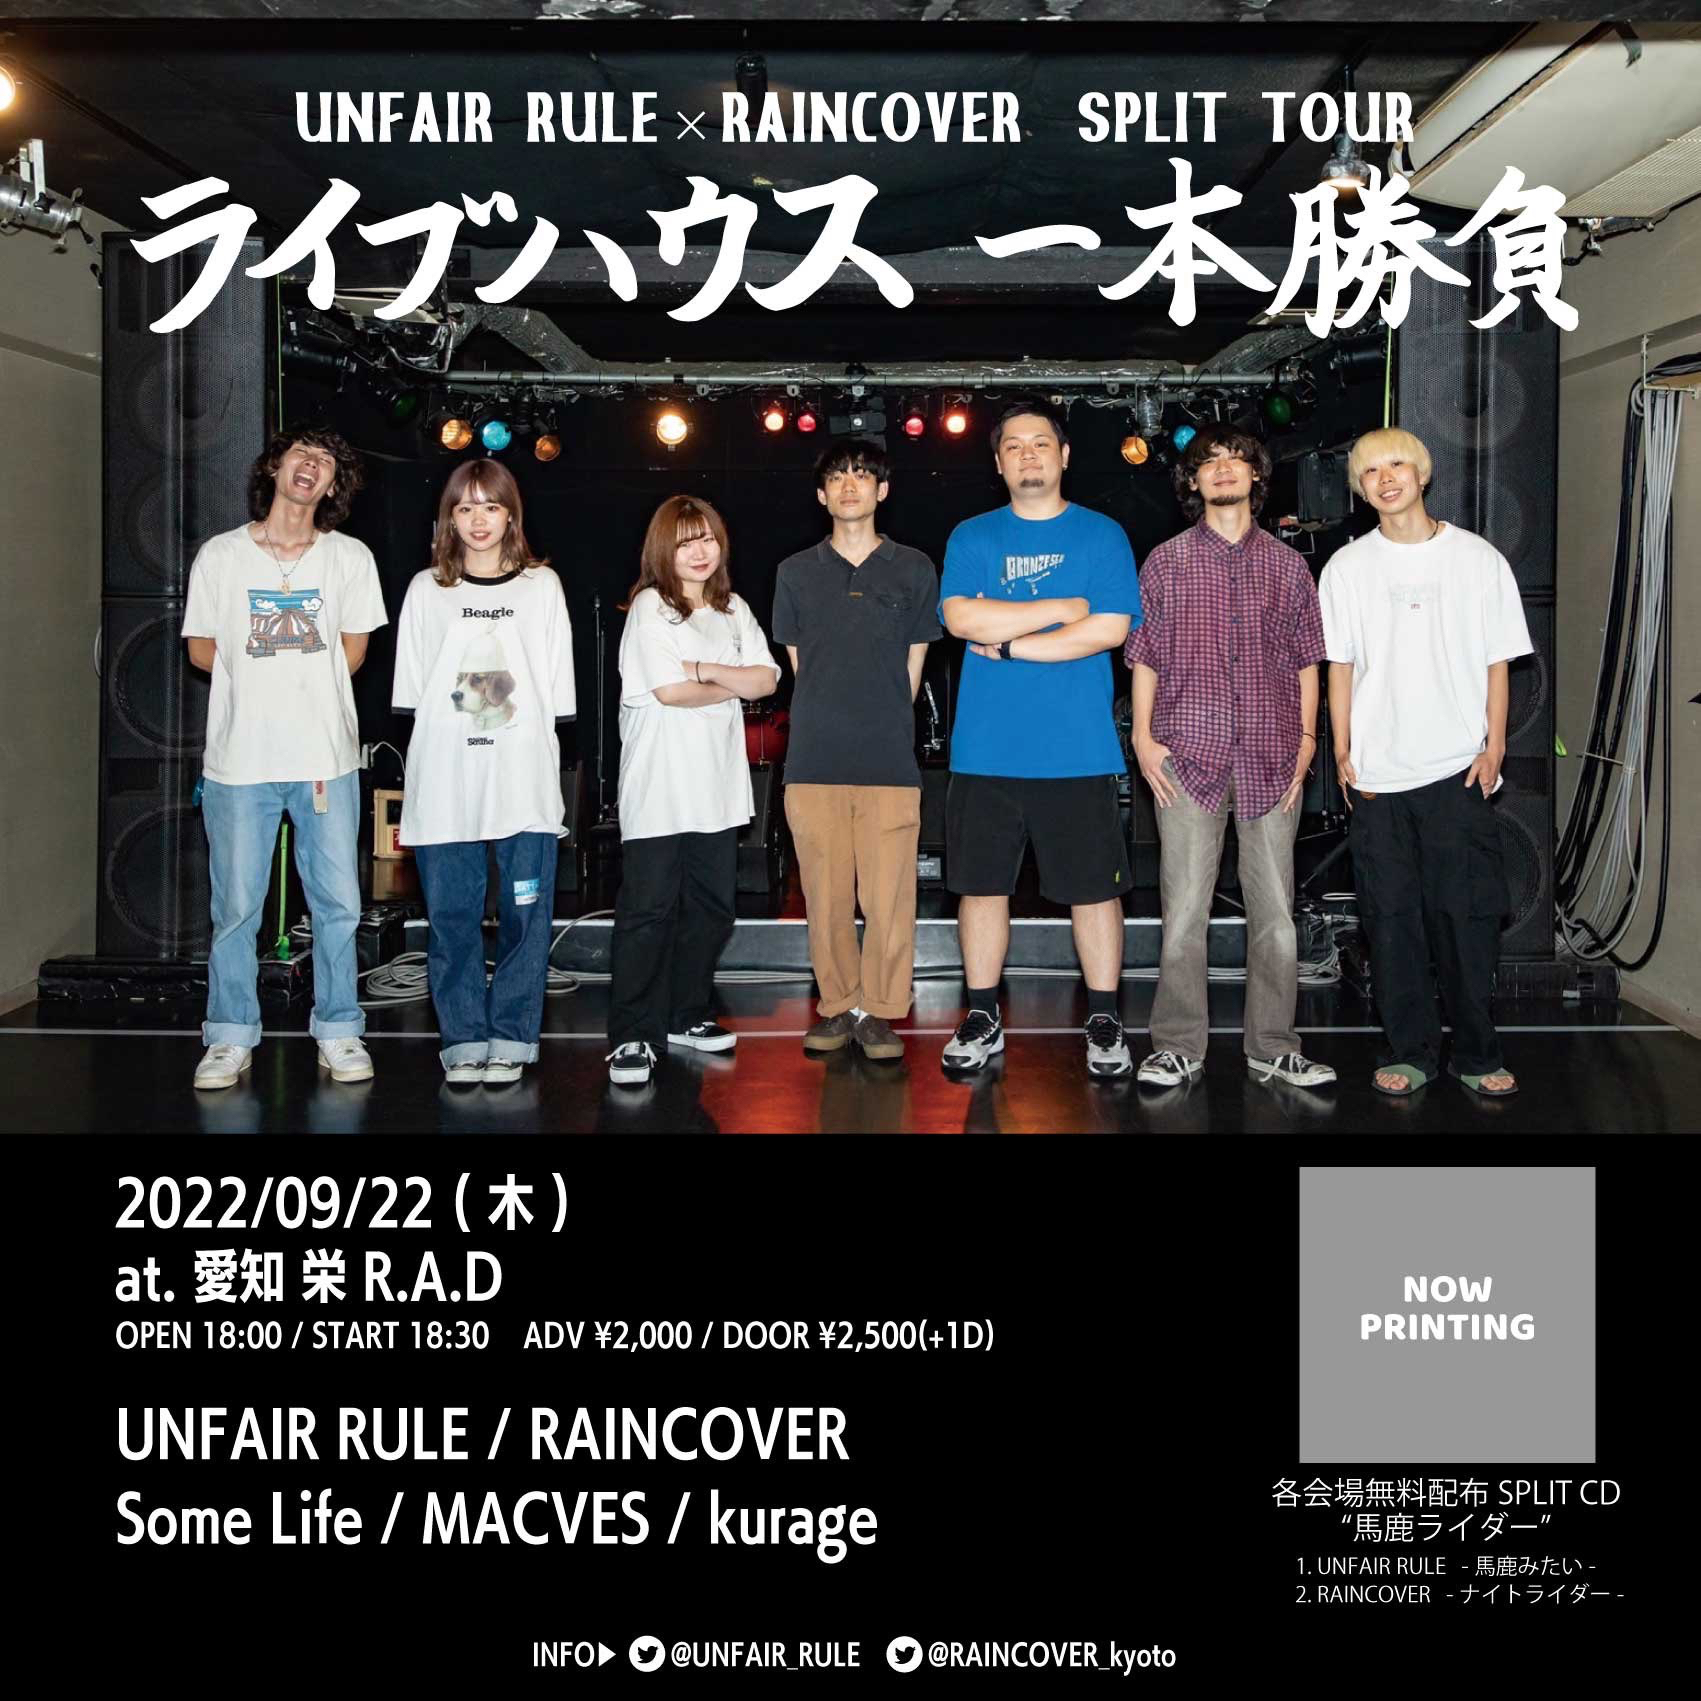 UNFAIR RULE × RAINCOVER SPLIT TOUR ''ライブハウス一本勝負''